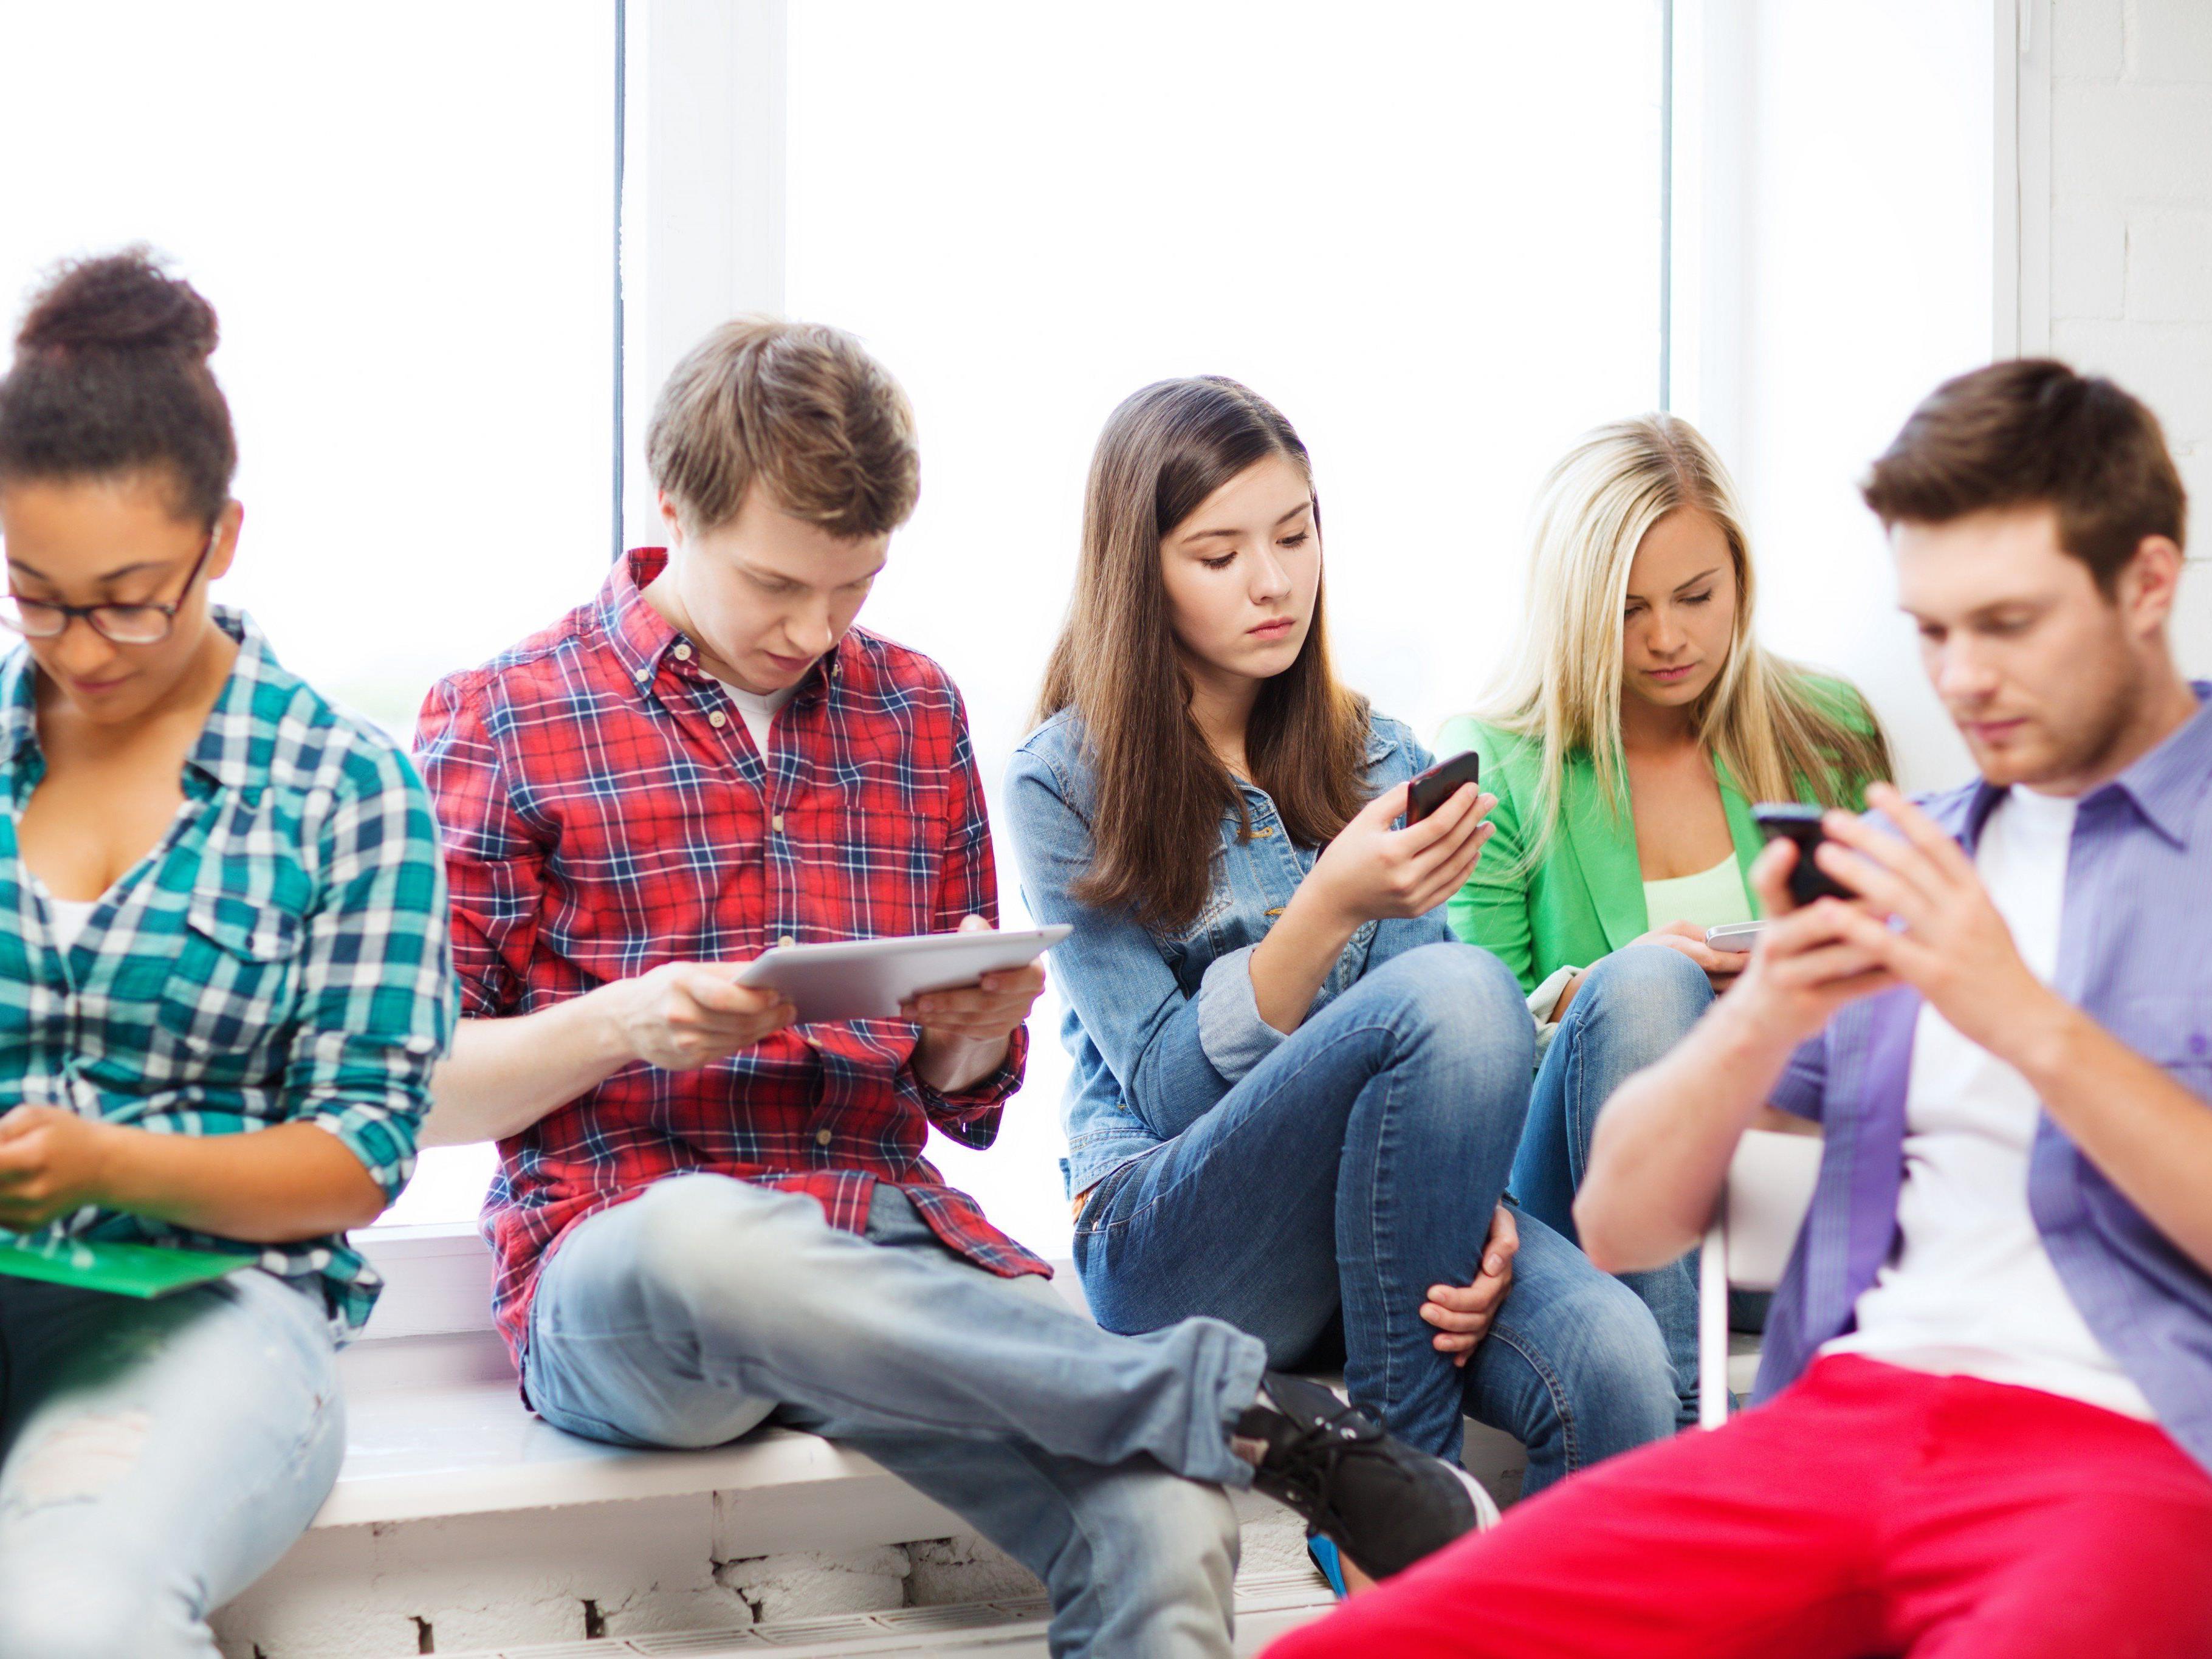 Faszination Medien erleben: Tauchen Sie ein in den digitalen Alltag von Jugendlichen! - Götzis | VOL.AT